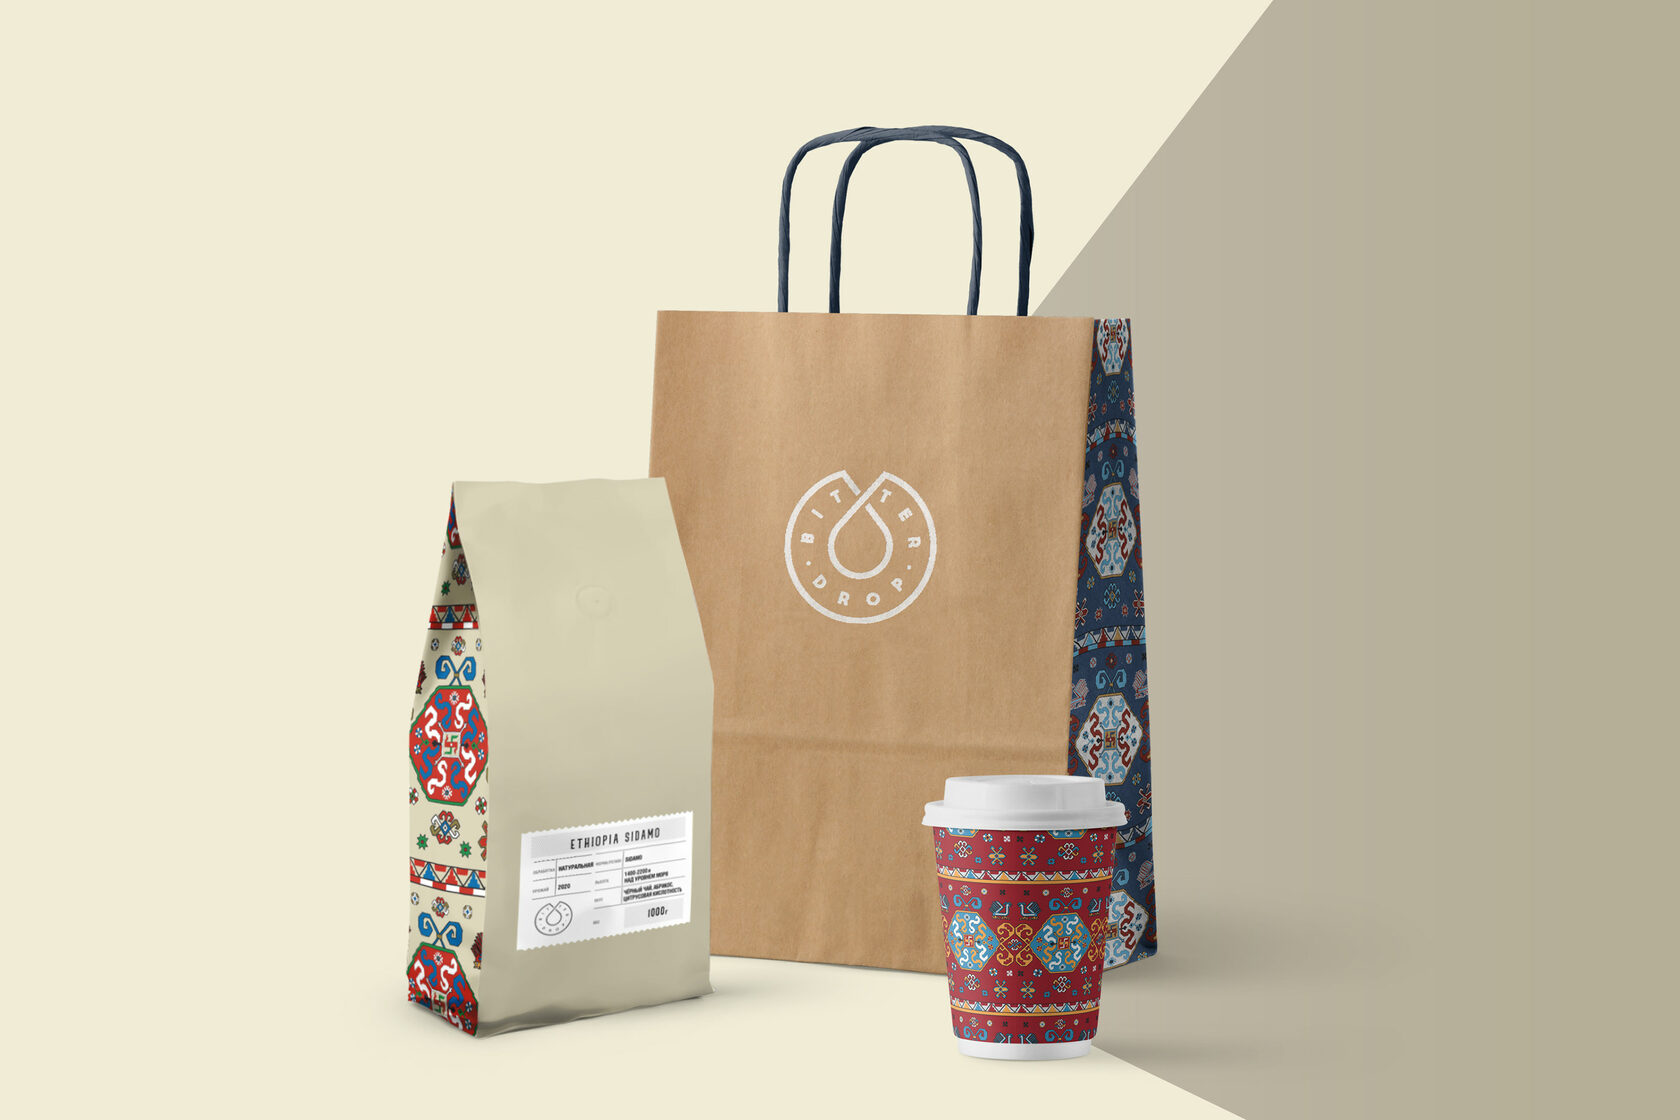 Дизайн упаковки и иллюстрации для стакана, пакета и пакета с кофе для кофейни Bitter Drop